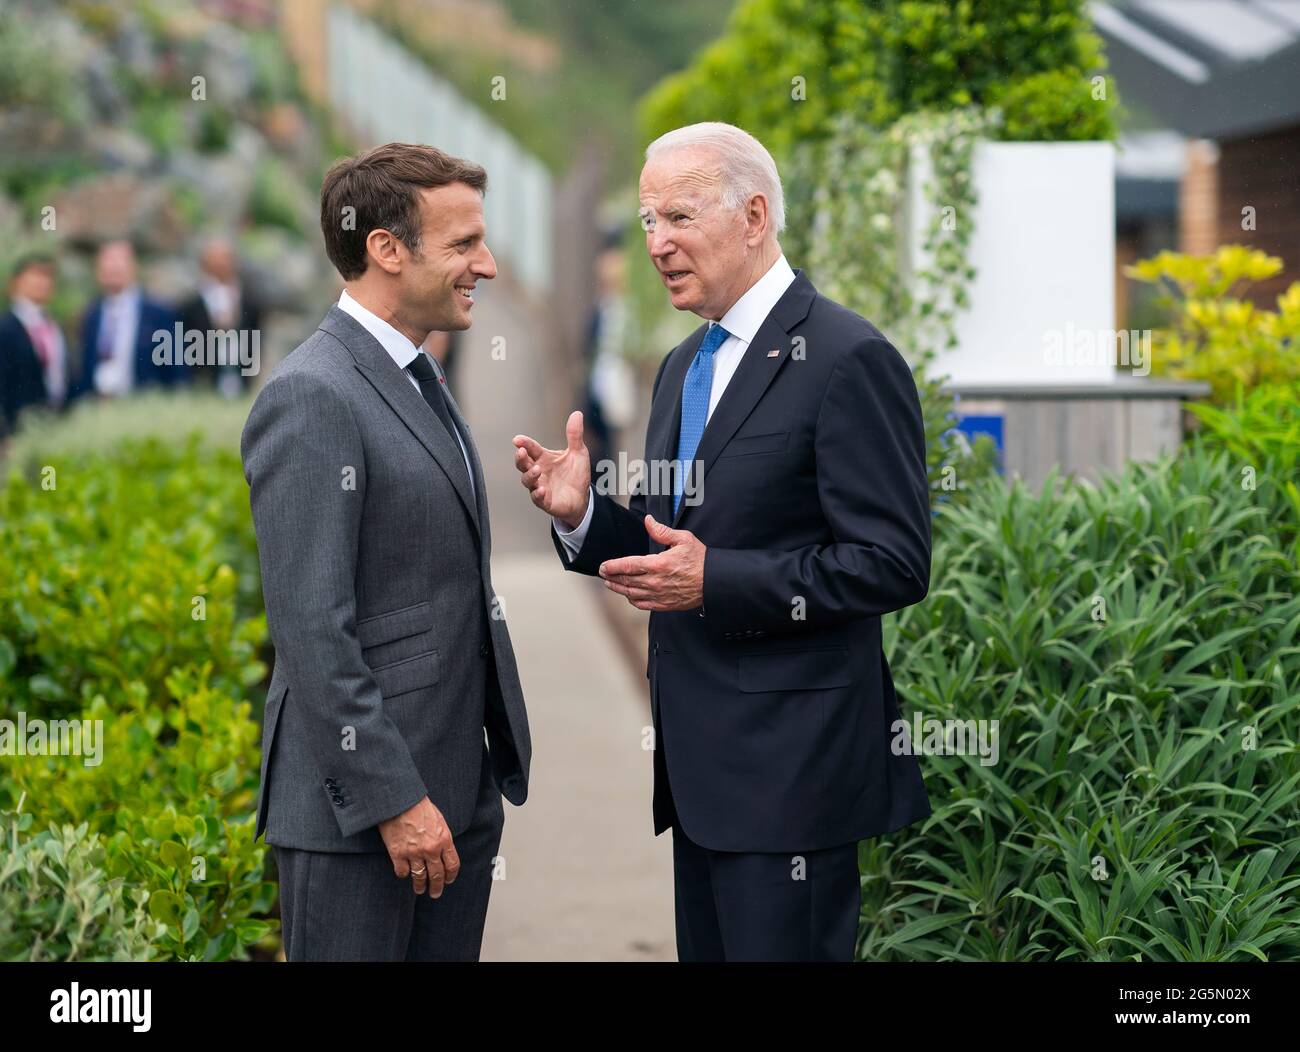 Le président Joe Biden et le président français Emmanuel Macron ont parlé avant la première session du sommet du G7, le vendredi 11 juin 2021, à l'hôtel et domaine Carbis Bay de St. Ives, à Cornwall, en Angleterre. (Photo officielle de la Maison Blanche par Adam Schultz) Banque D'Images